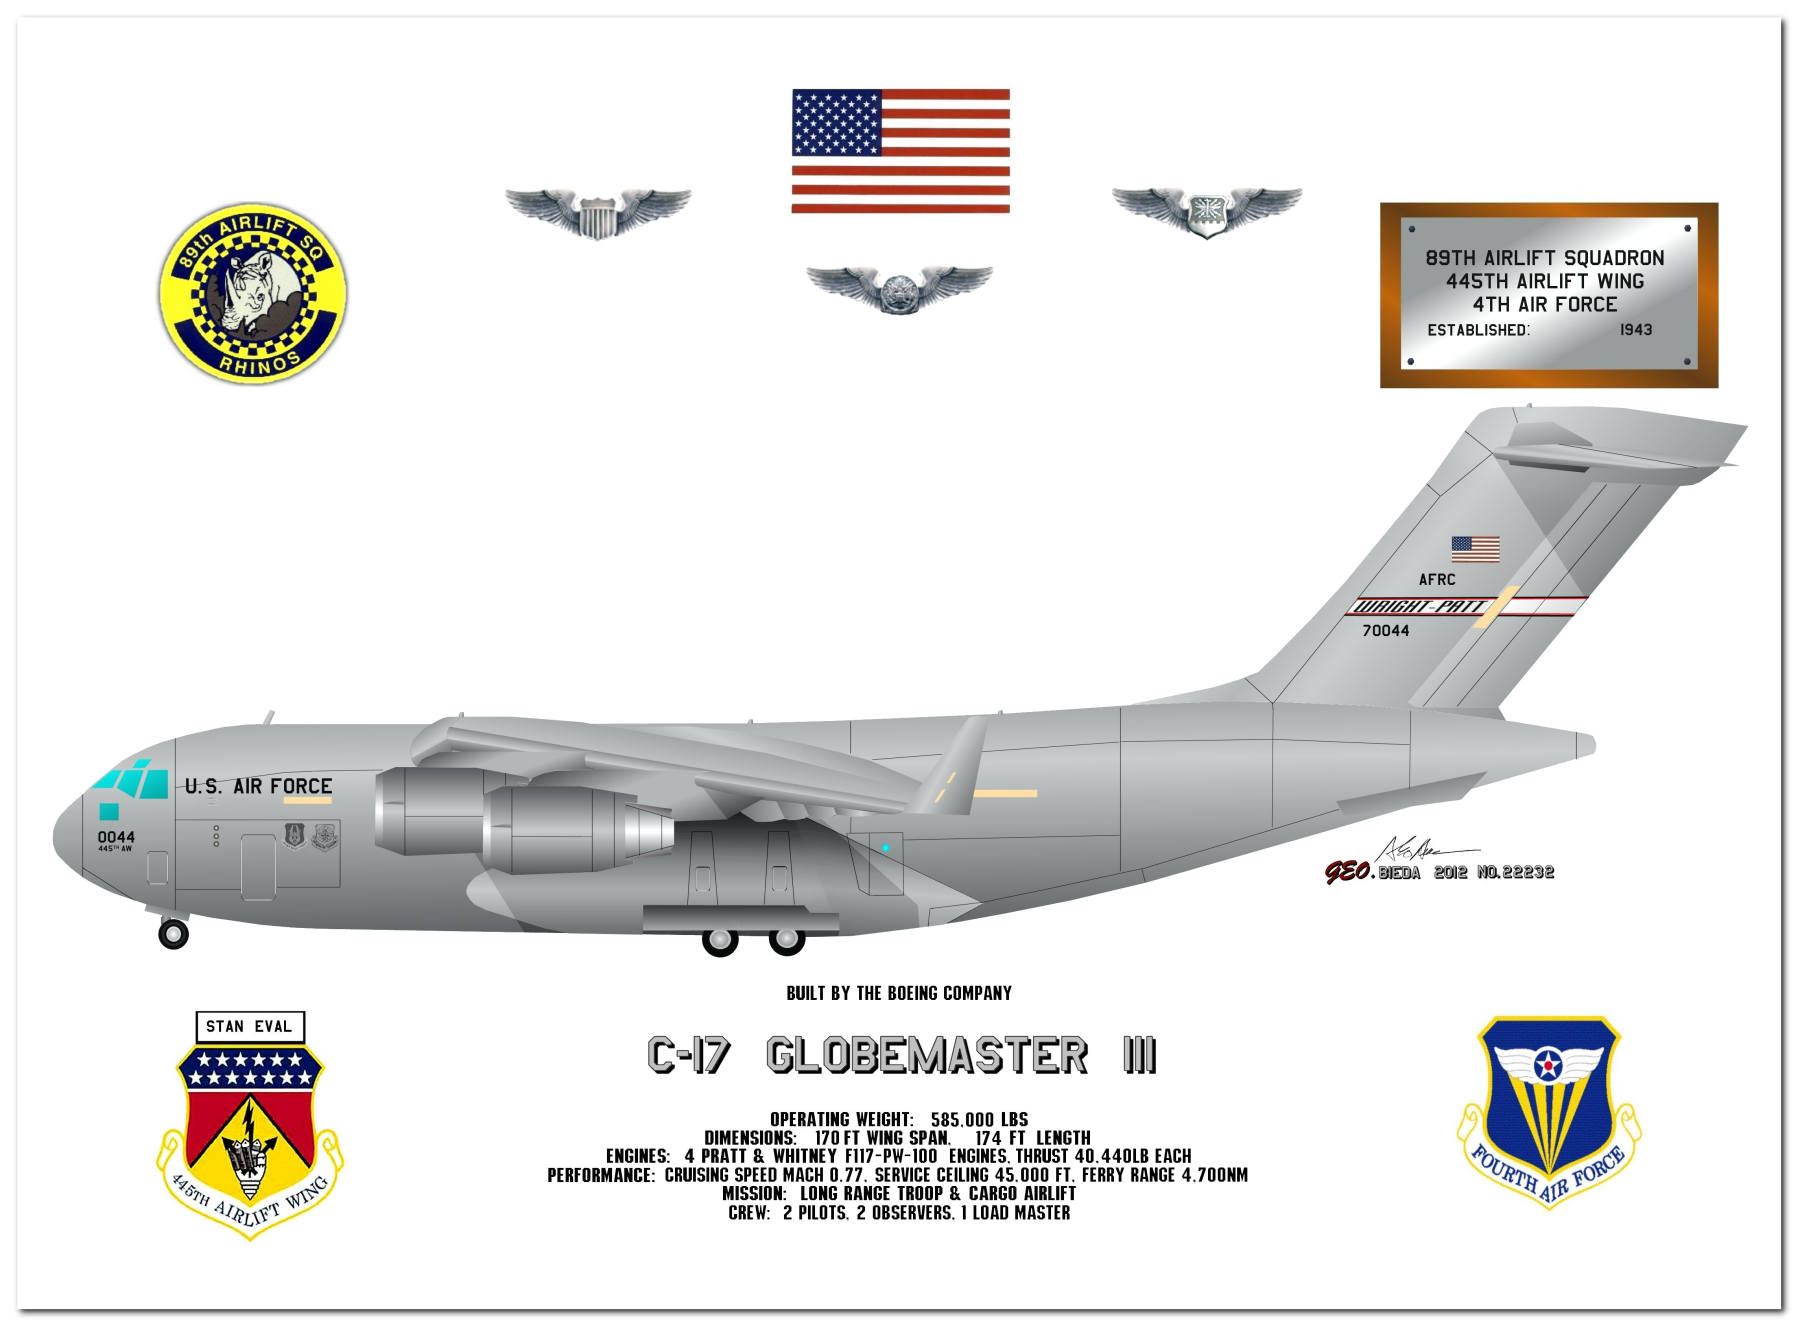 C-17 Globemaster III Profile Drawings by George Bieda